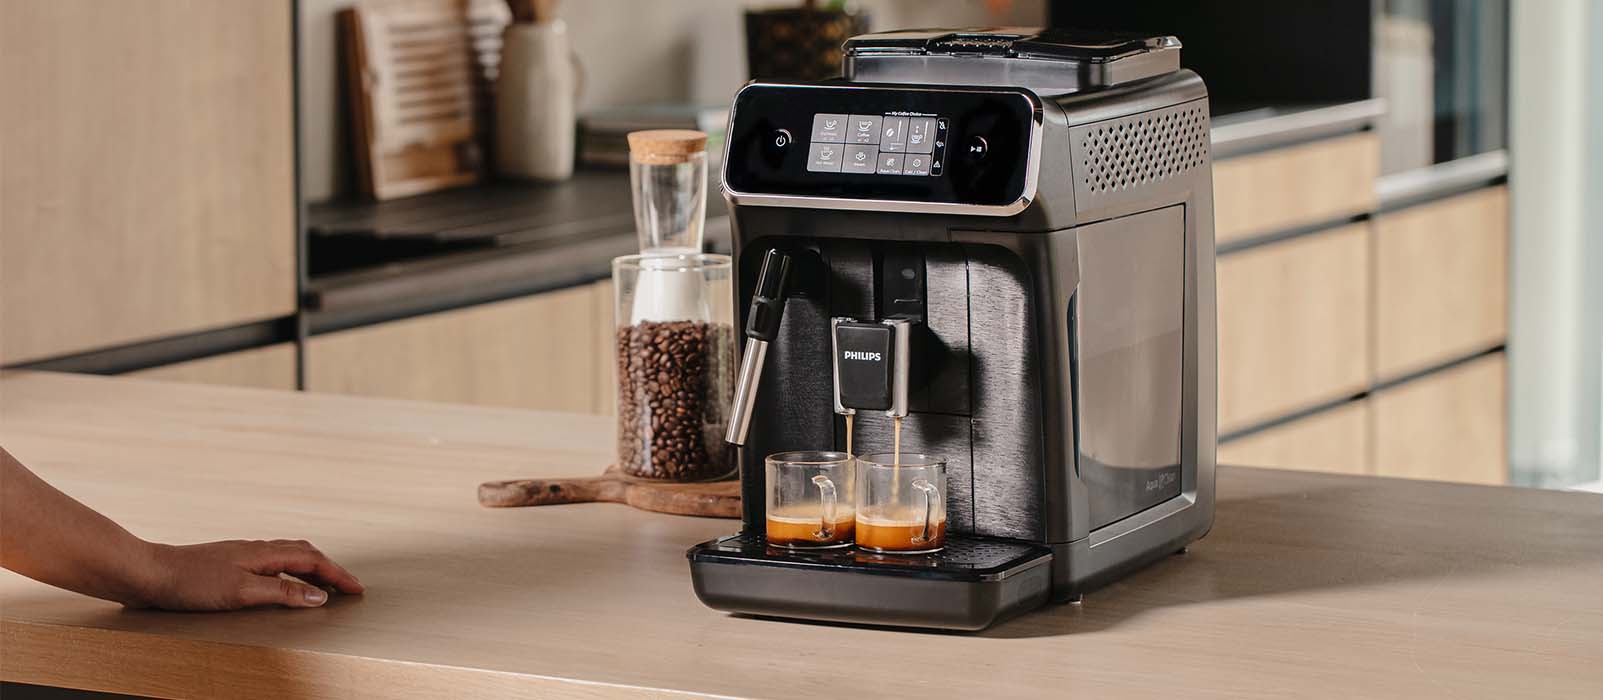 Philips 2200, pour entrer dans le monde du café en grain